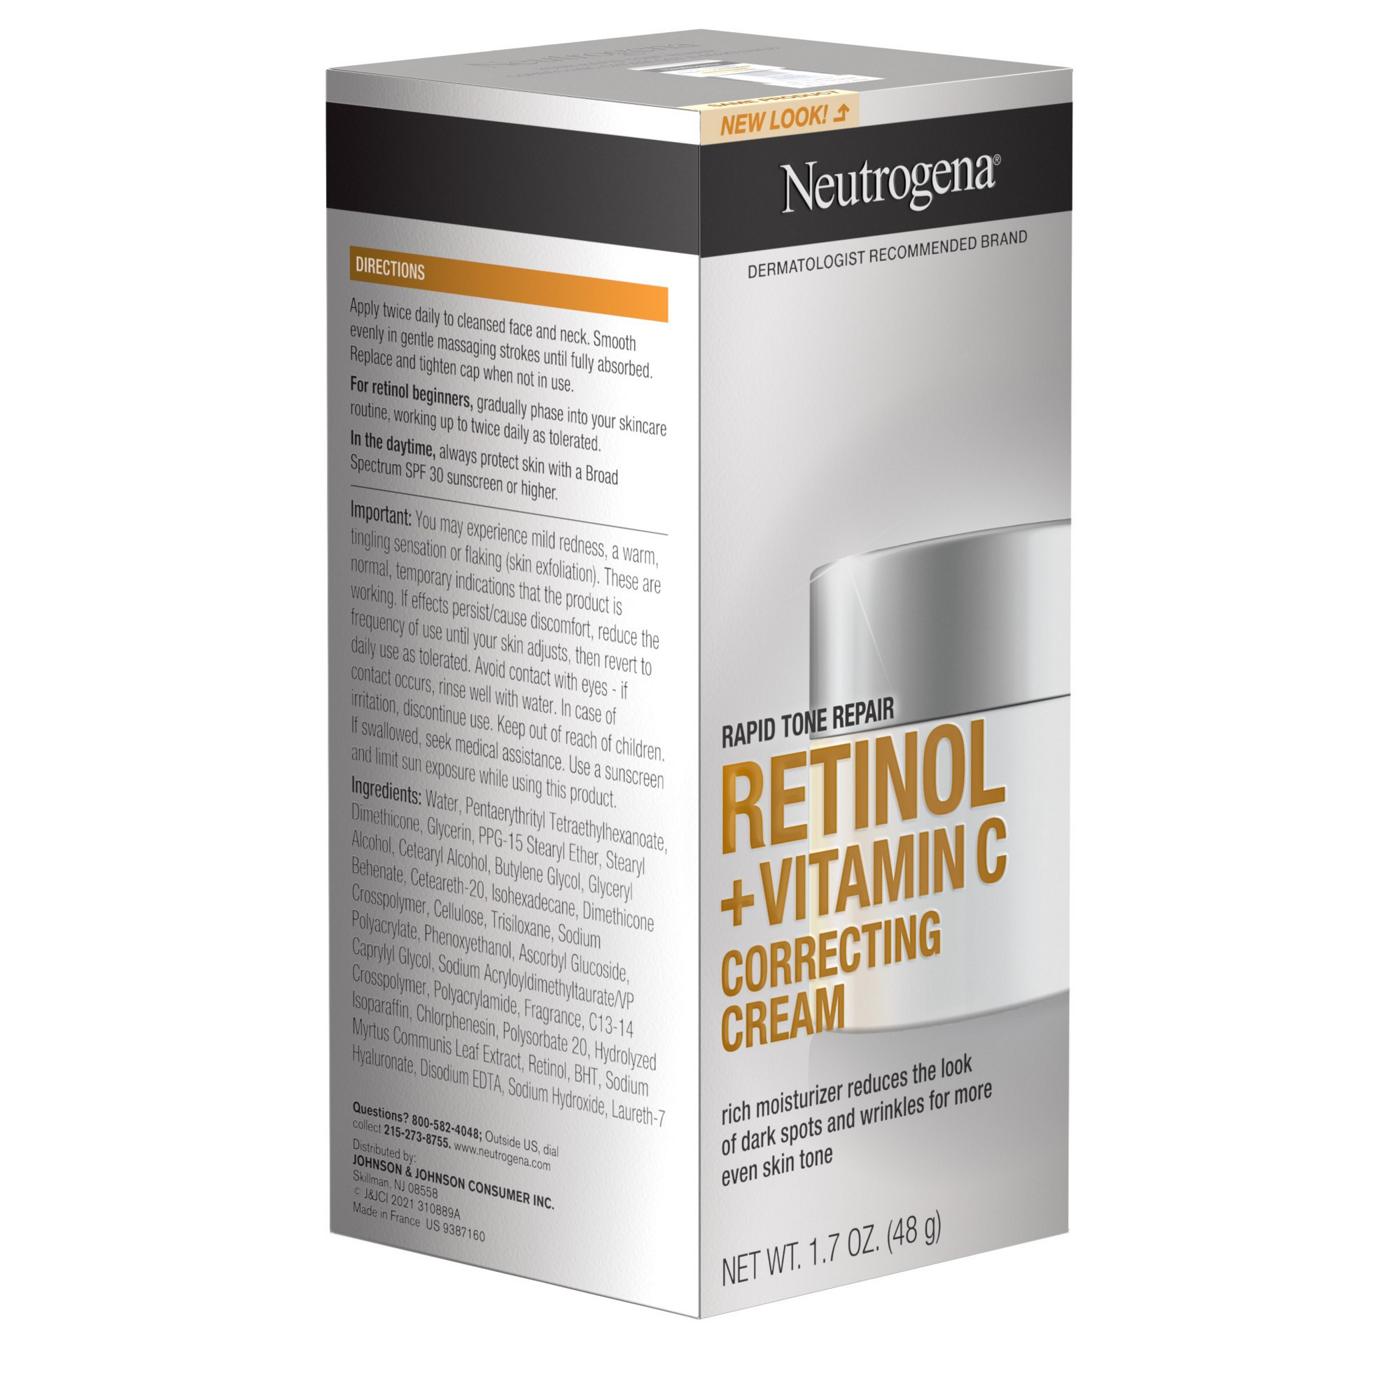 Neutrogena Rapid Tone Repair Retinol + Vitamin C Correcting Cream; image 6 of 8